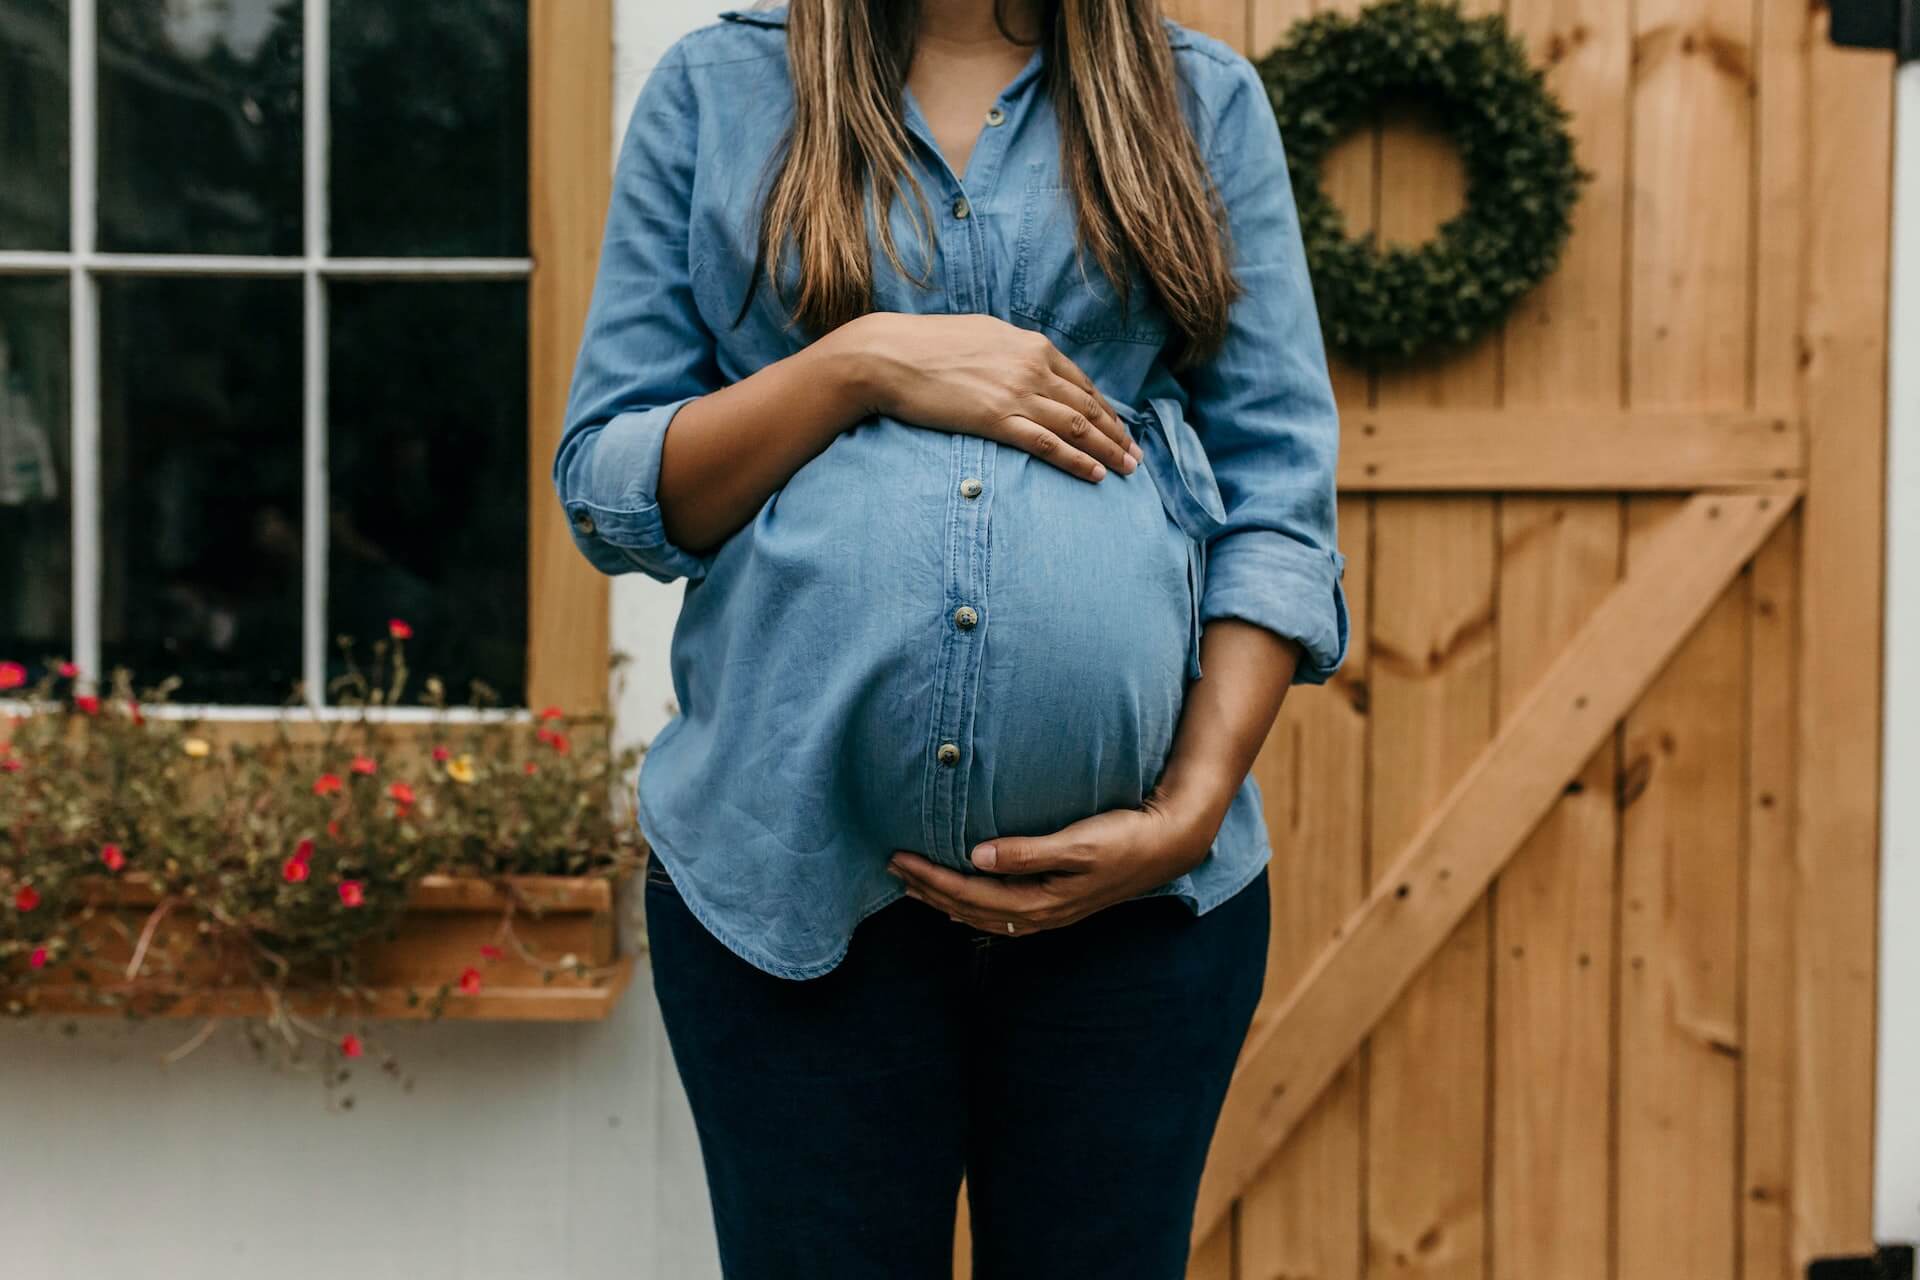 Tehotenská móda: Praktické tipy a inšpirácie na obliekanie, ktoré by mala poznať každá tehotná žena